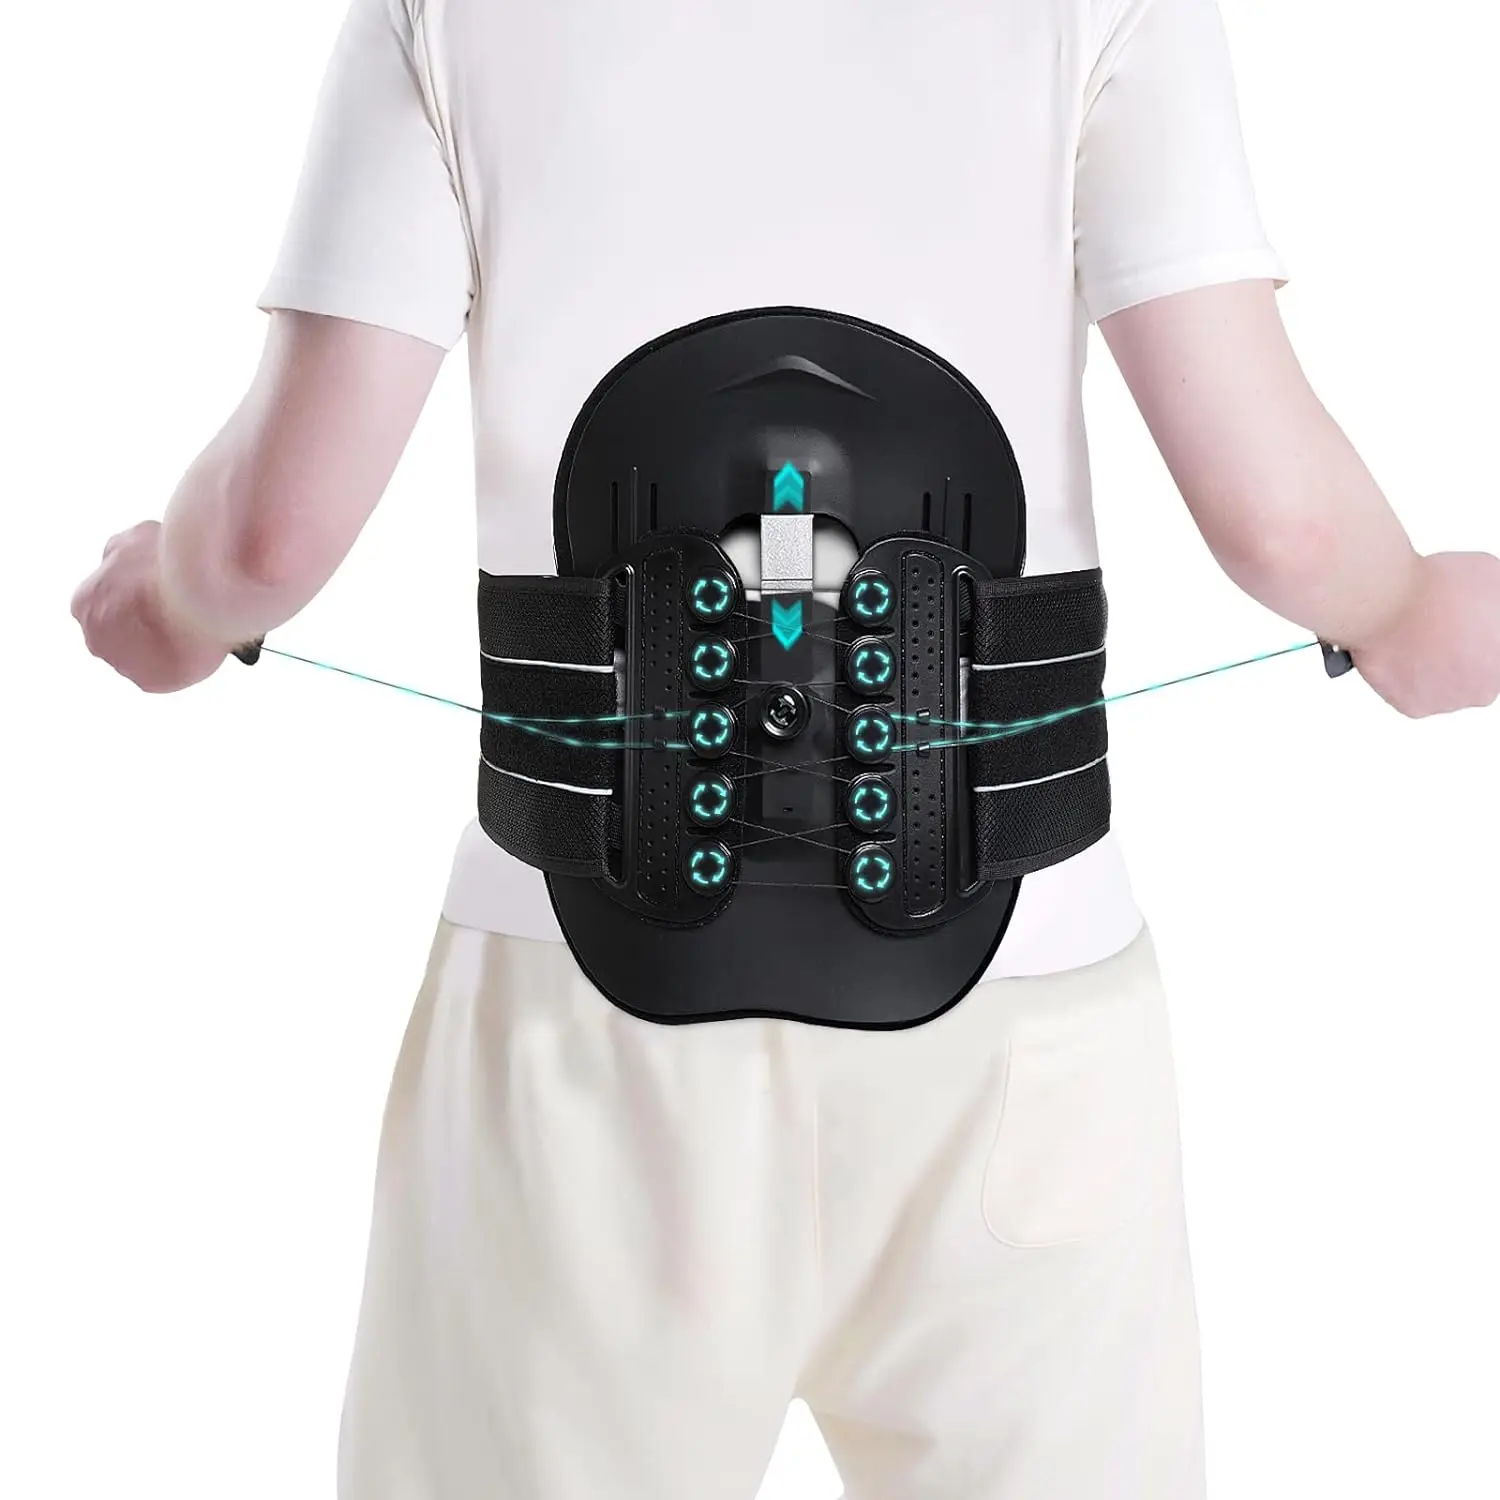 

Bestlife LSO поддержка декомпрессии позвоночника-полный бандаж для спины для женщин и мужчин, 3D подушка плюс поясной корсет с поясницей с Adj